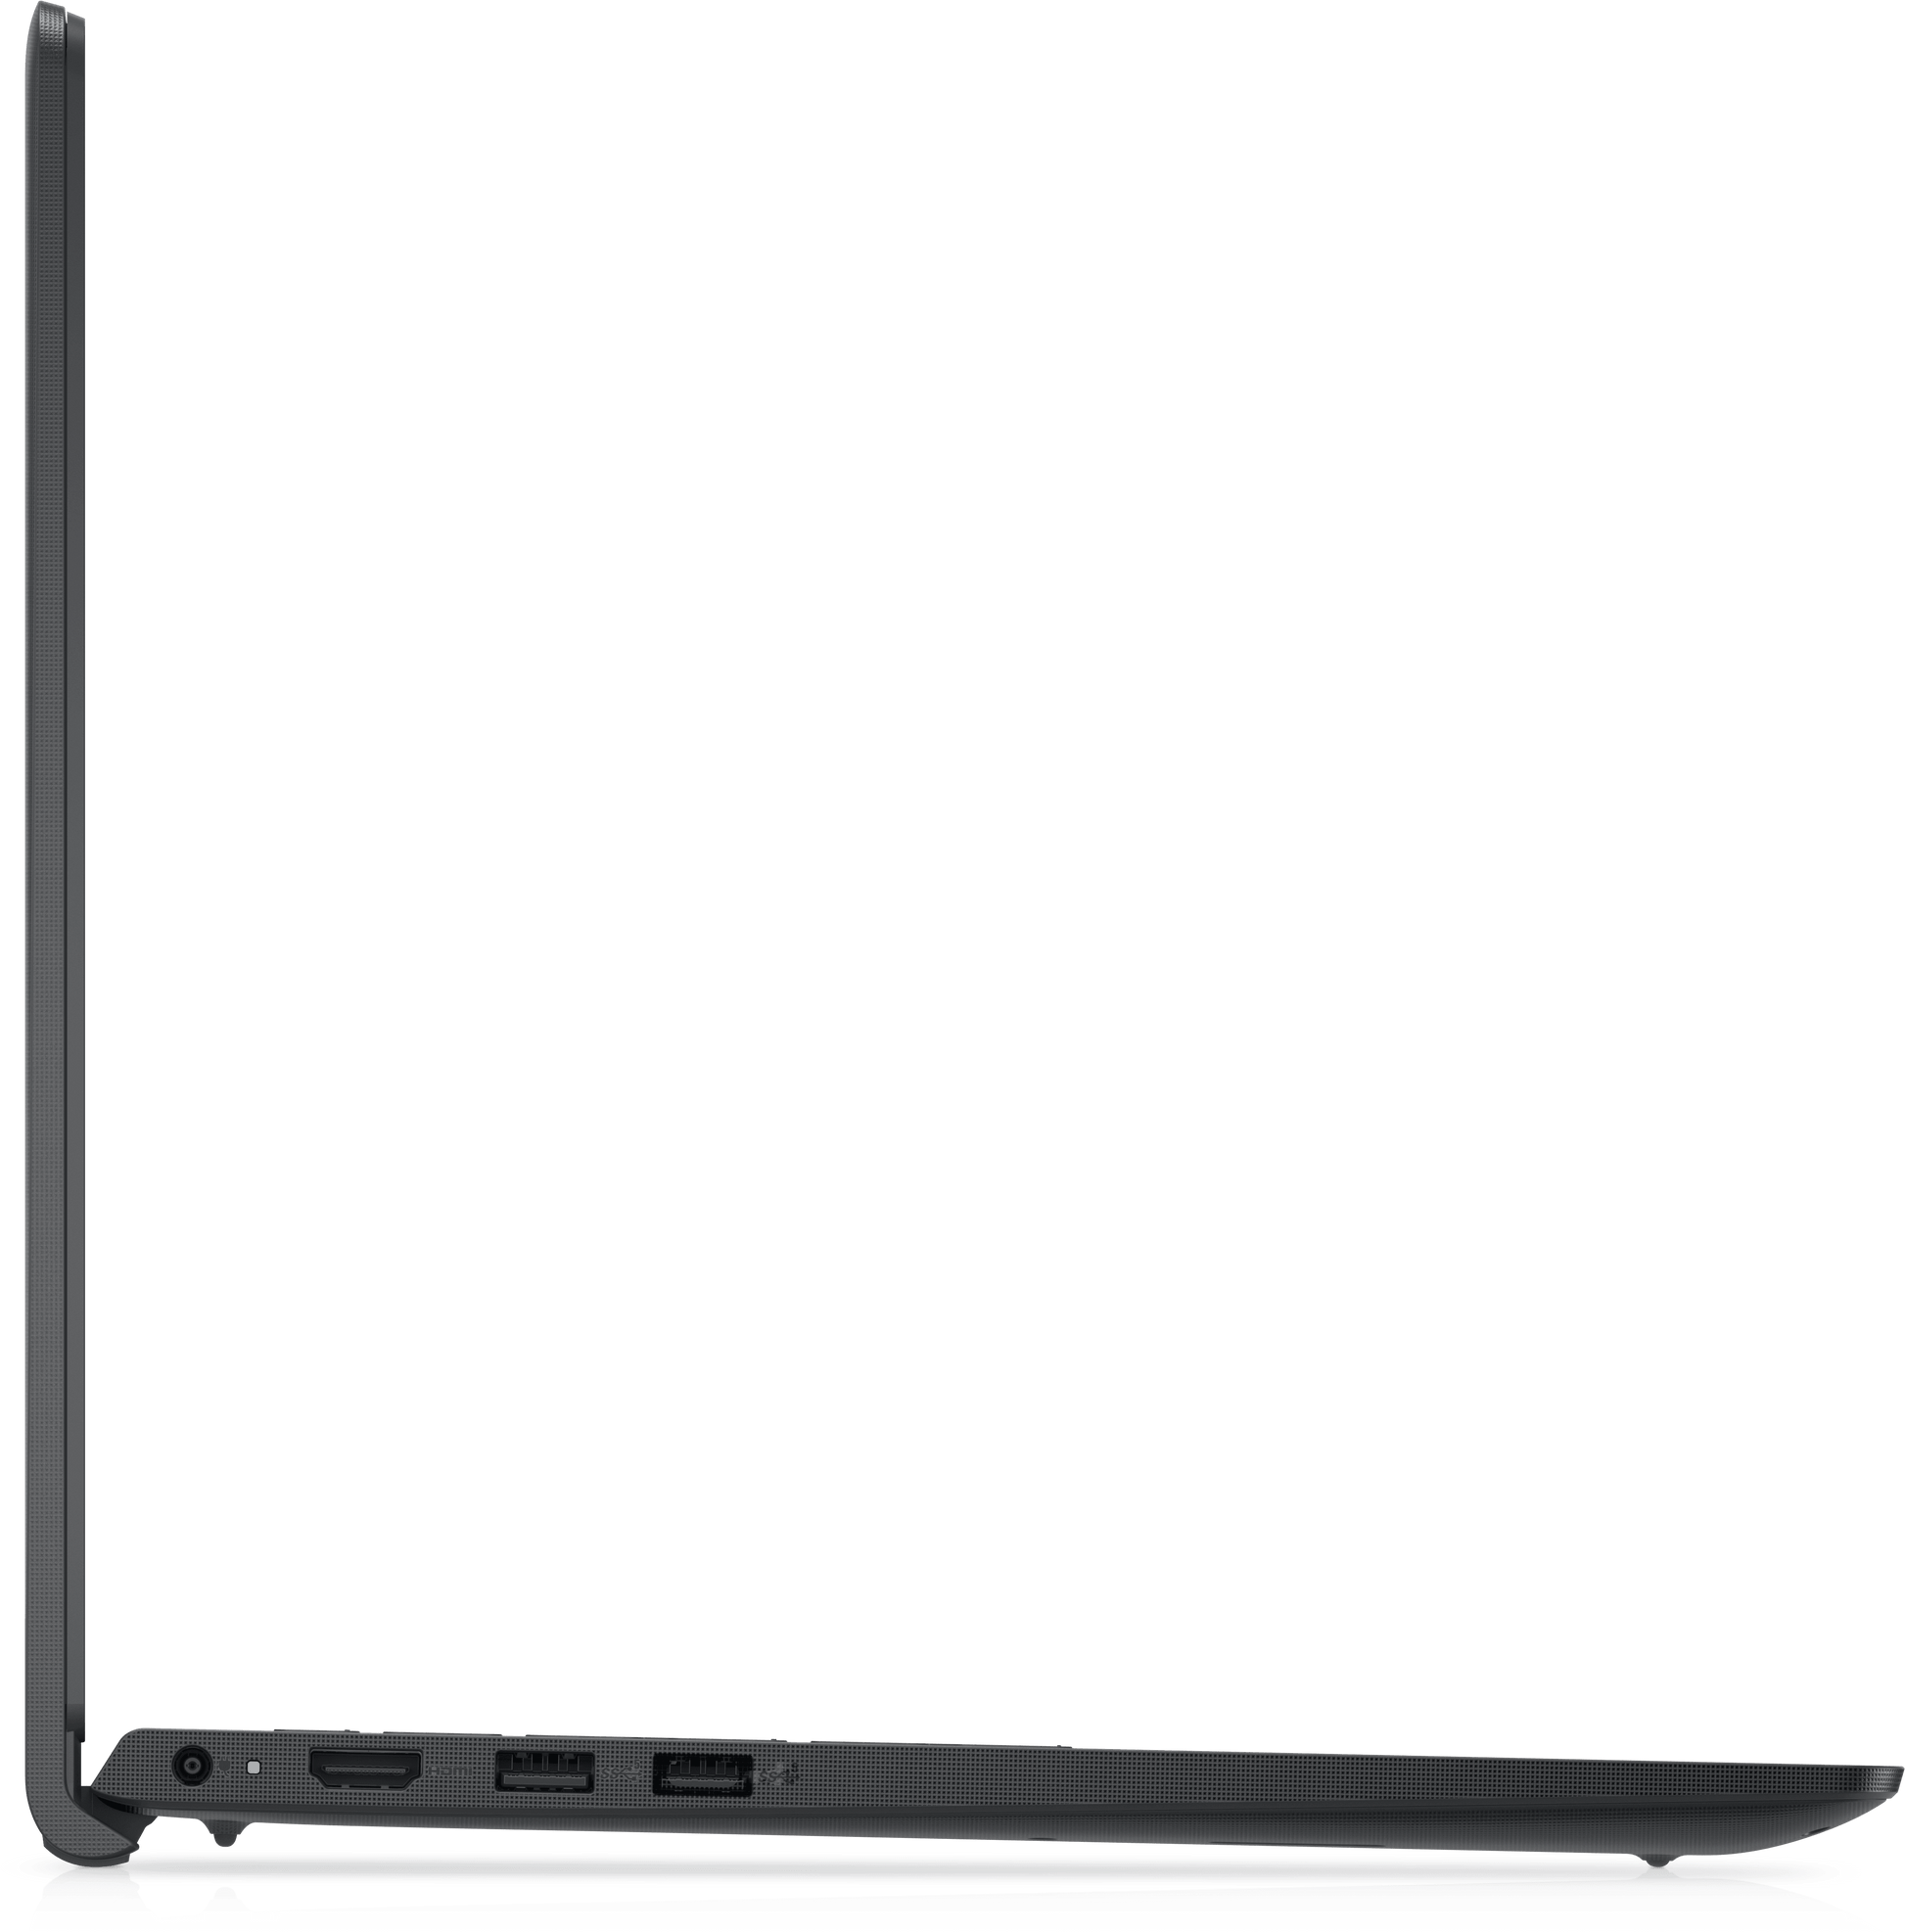 DELL Vostro 3510 Laptop - Intel Core i3-1115G4, 4GB, 256GB SSD, Intel, 15.6-Inch HD, Dos - DELL Vostro 3510 Laptop - Intel Core i3-1115G4, 4GB, 256GB SSD, Intel, 15.6-Inch HD, Dos - undefined Ennap.com